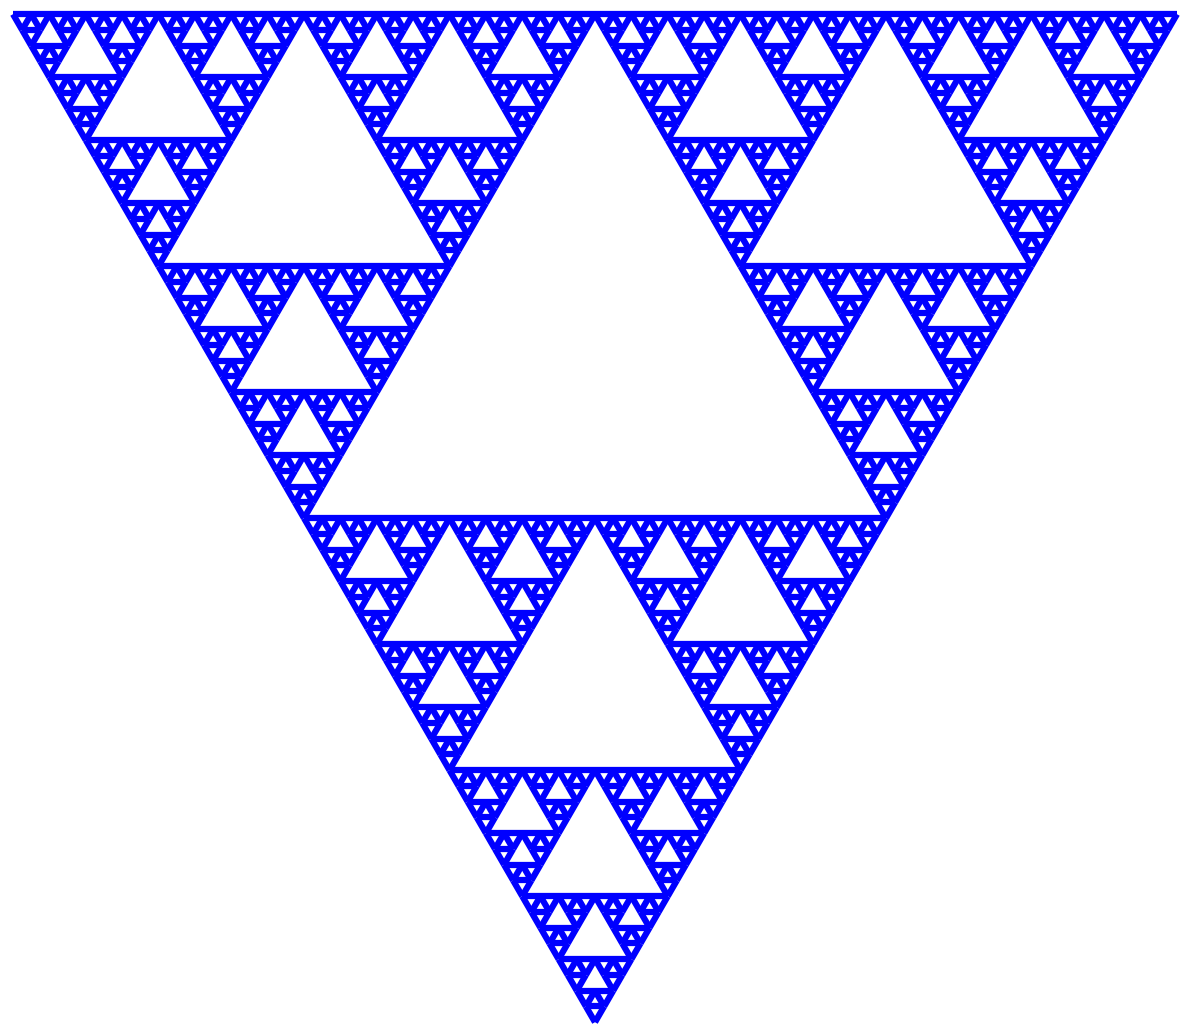 Sierpinski triangle iteration 6